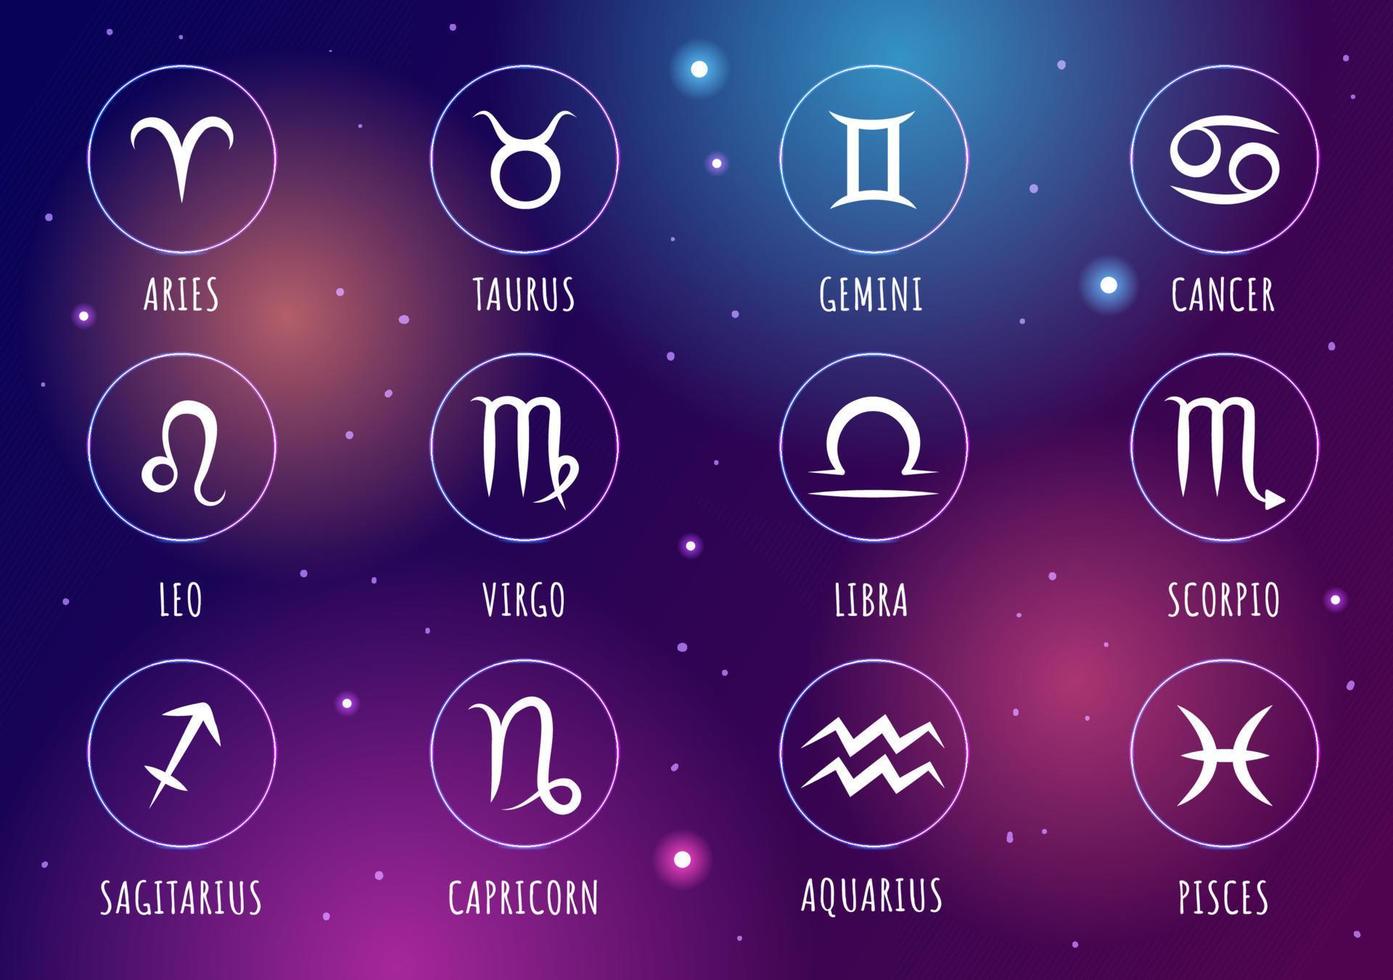 signe astrologique de la roue du zodiaque avec symbole douze noms d'astrologie, horoscopes ou constellations en illustration vectorielle de personnage de dessin animé plat vecteur